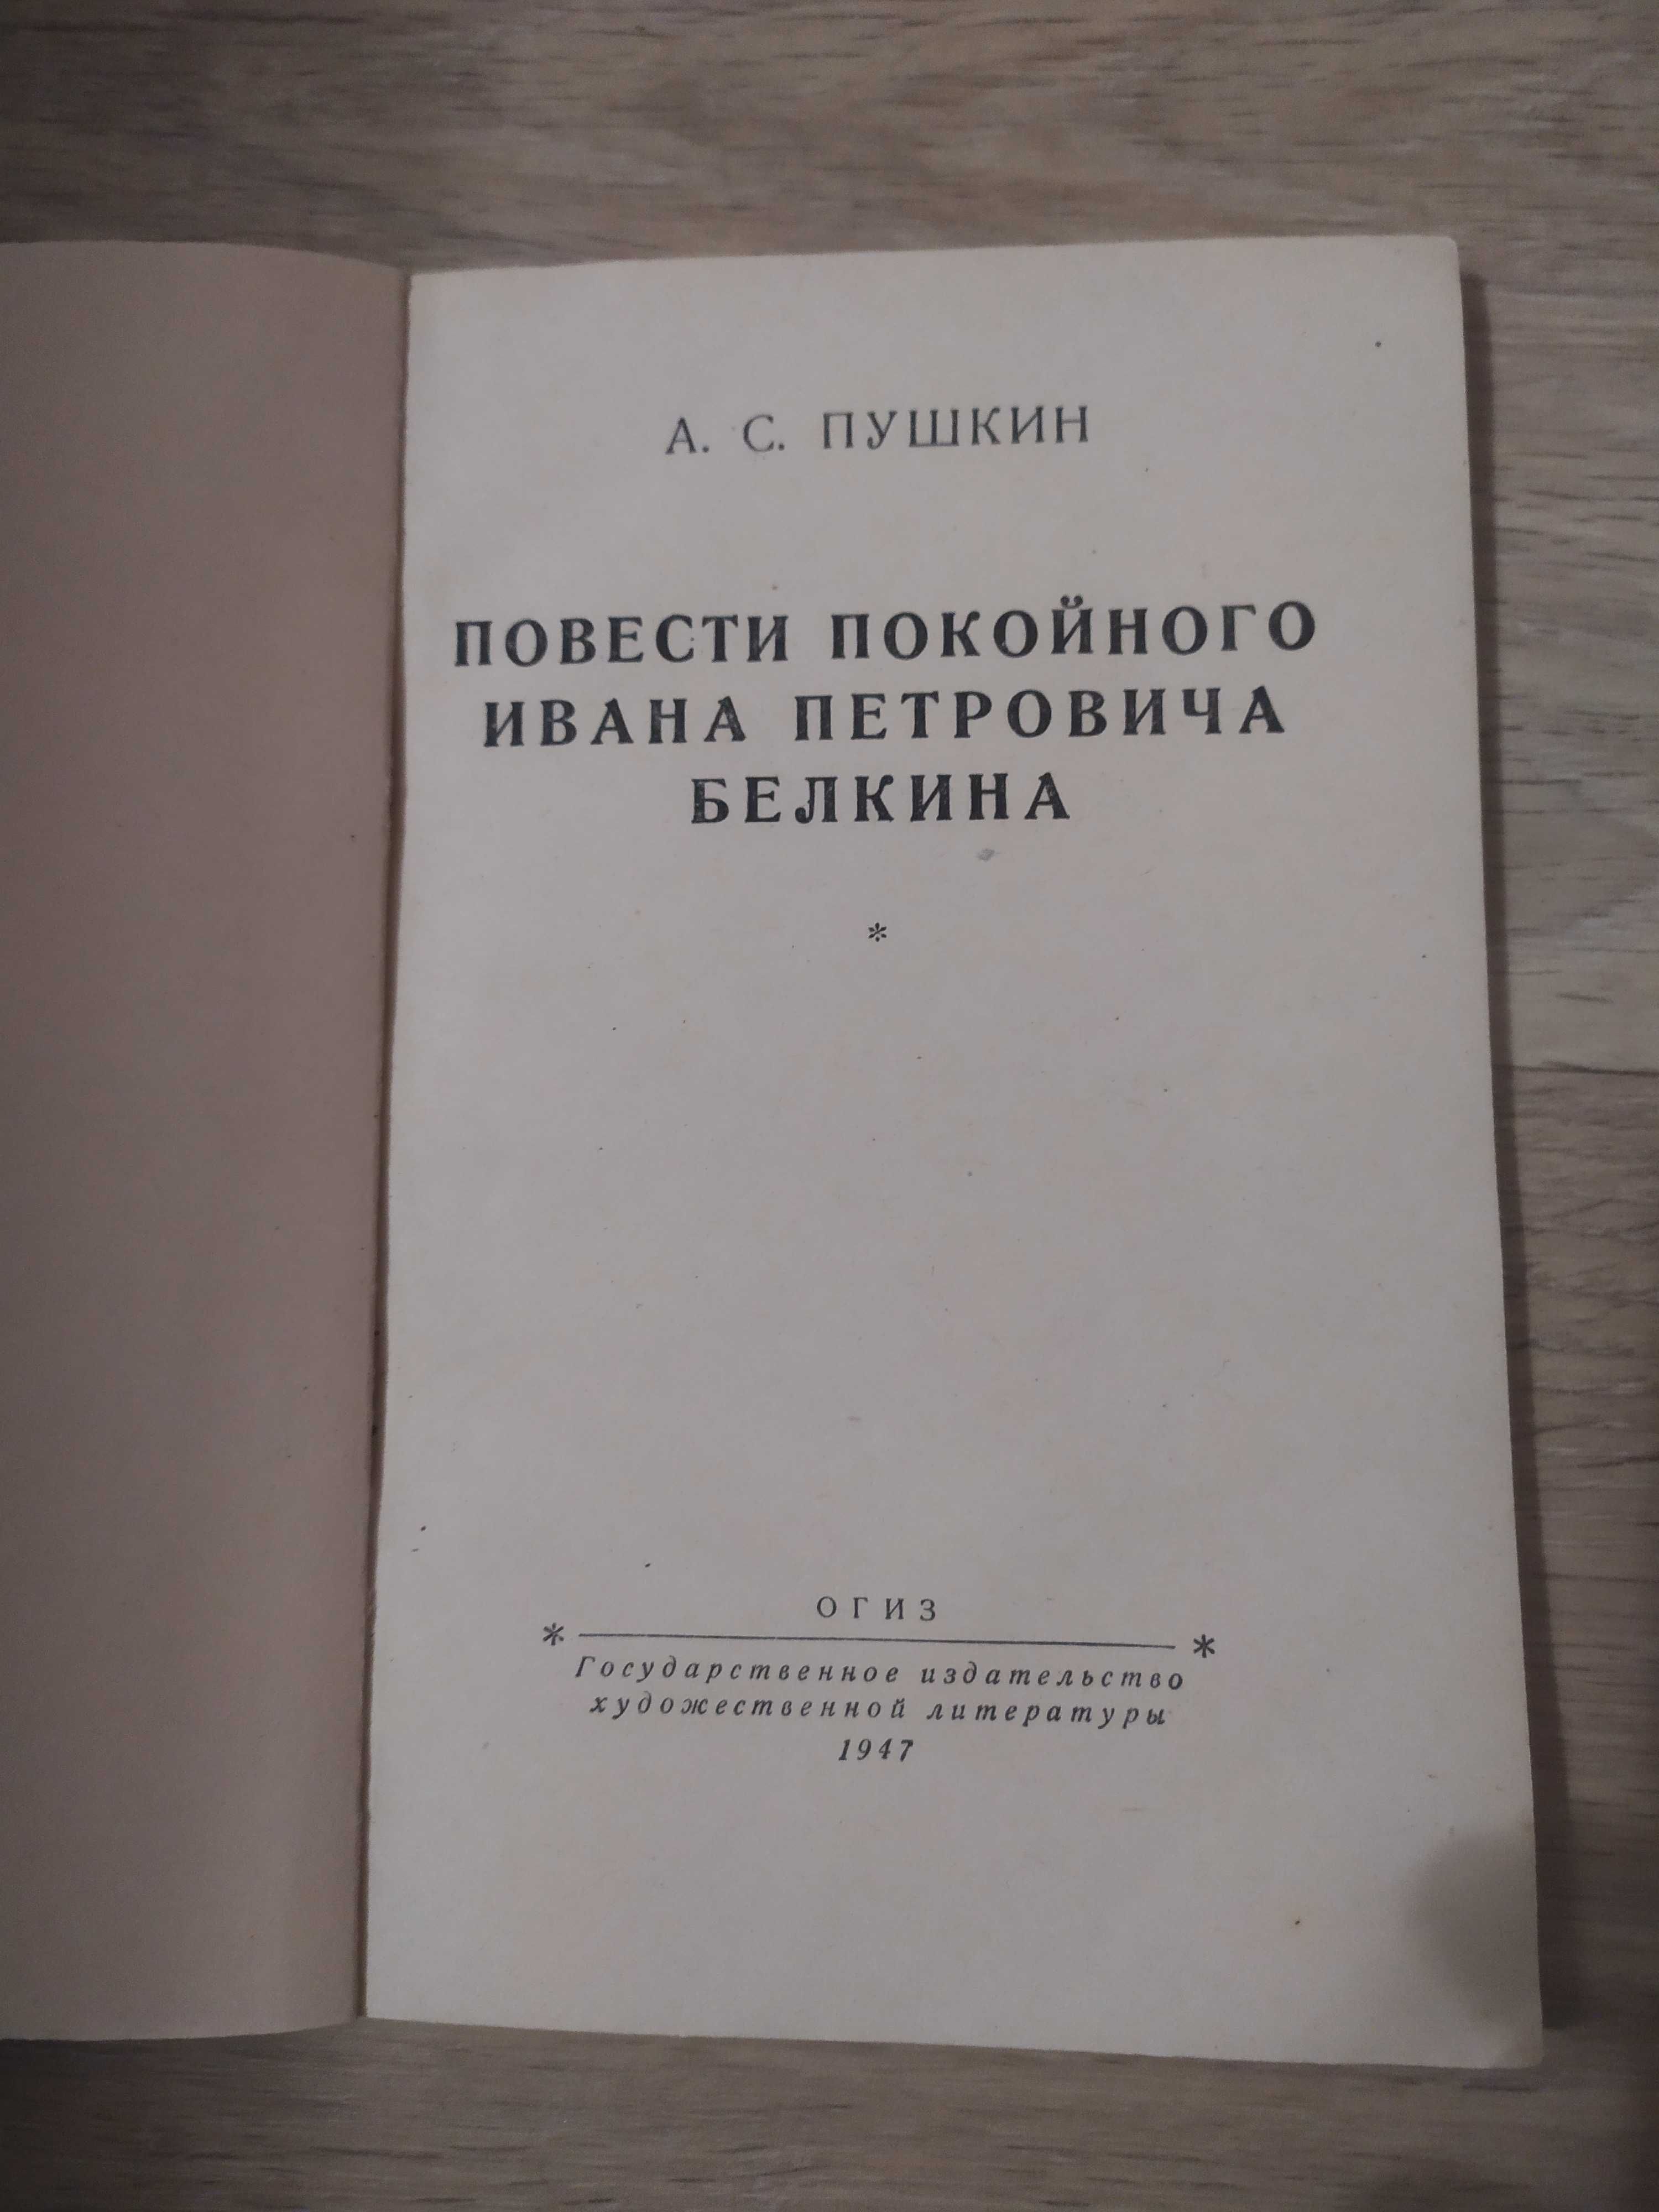 Книги А.С.Пушкина времён СССР